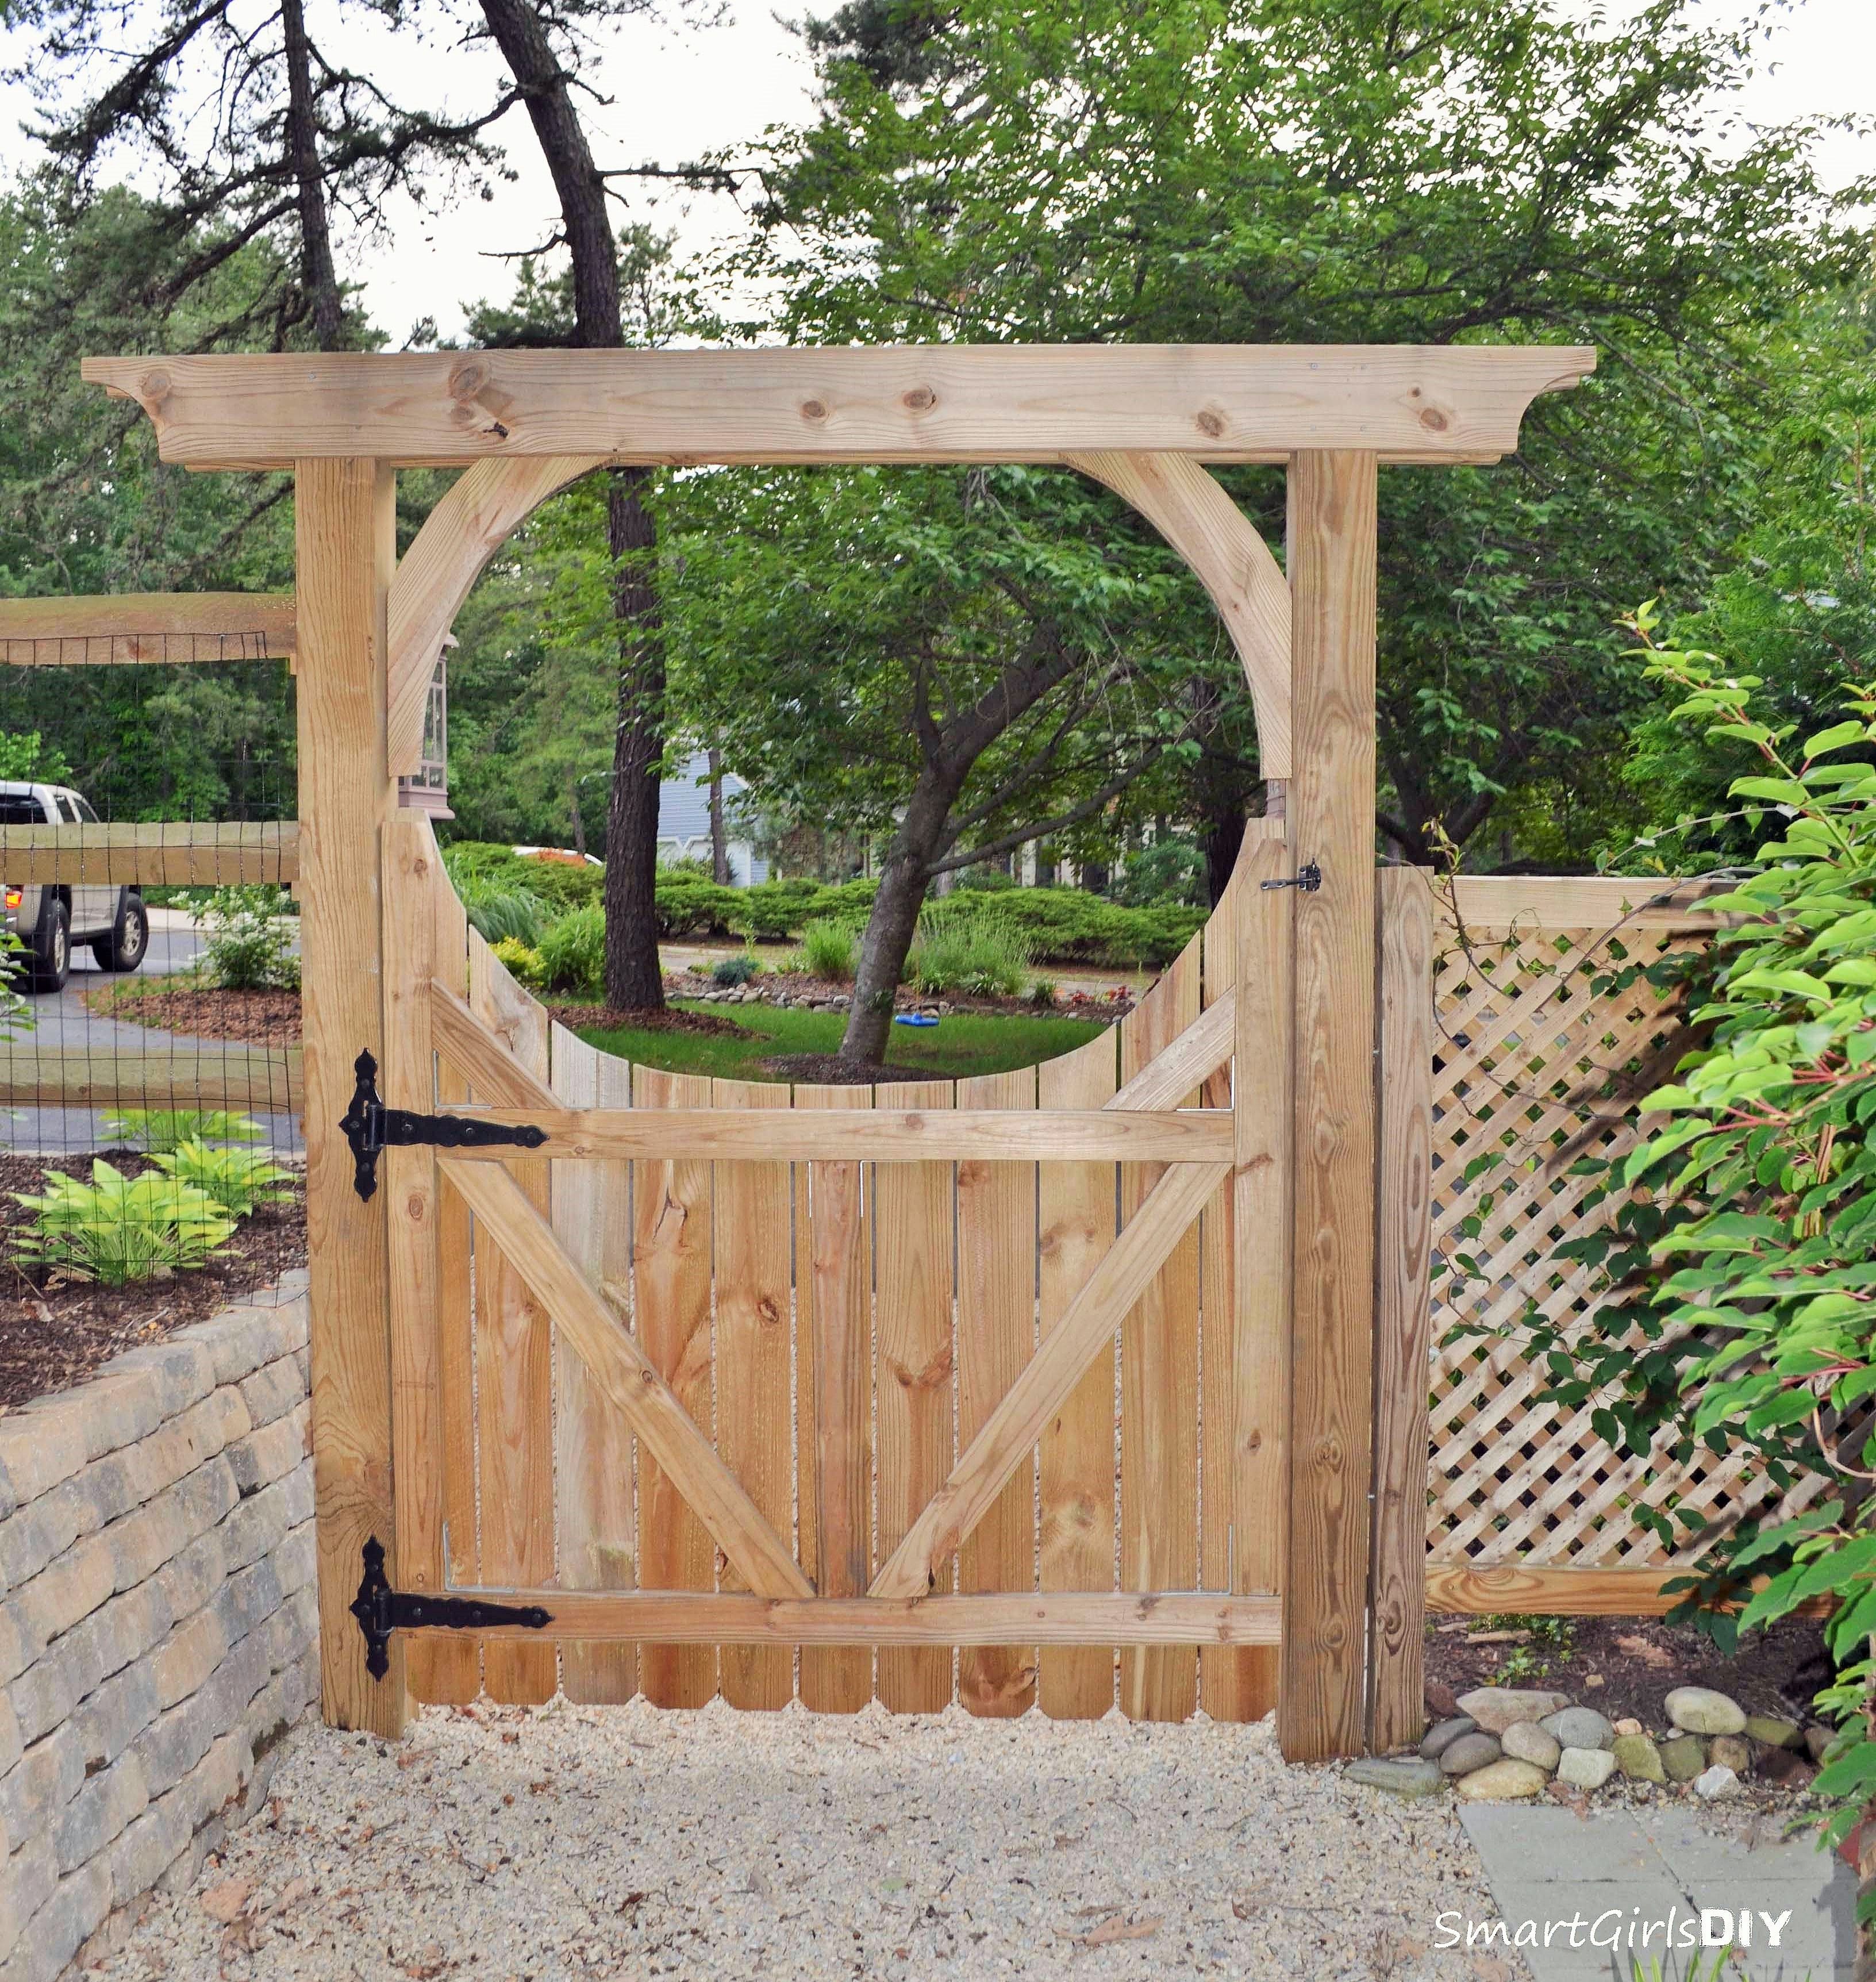 Wooden Garden Gates